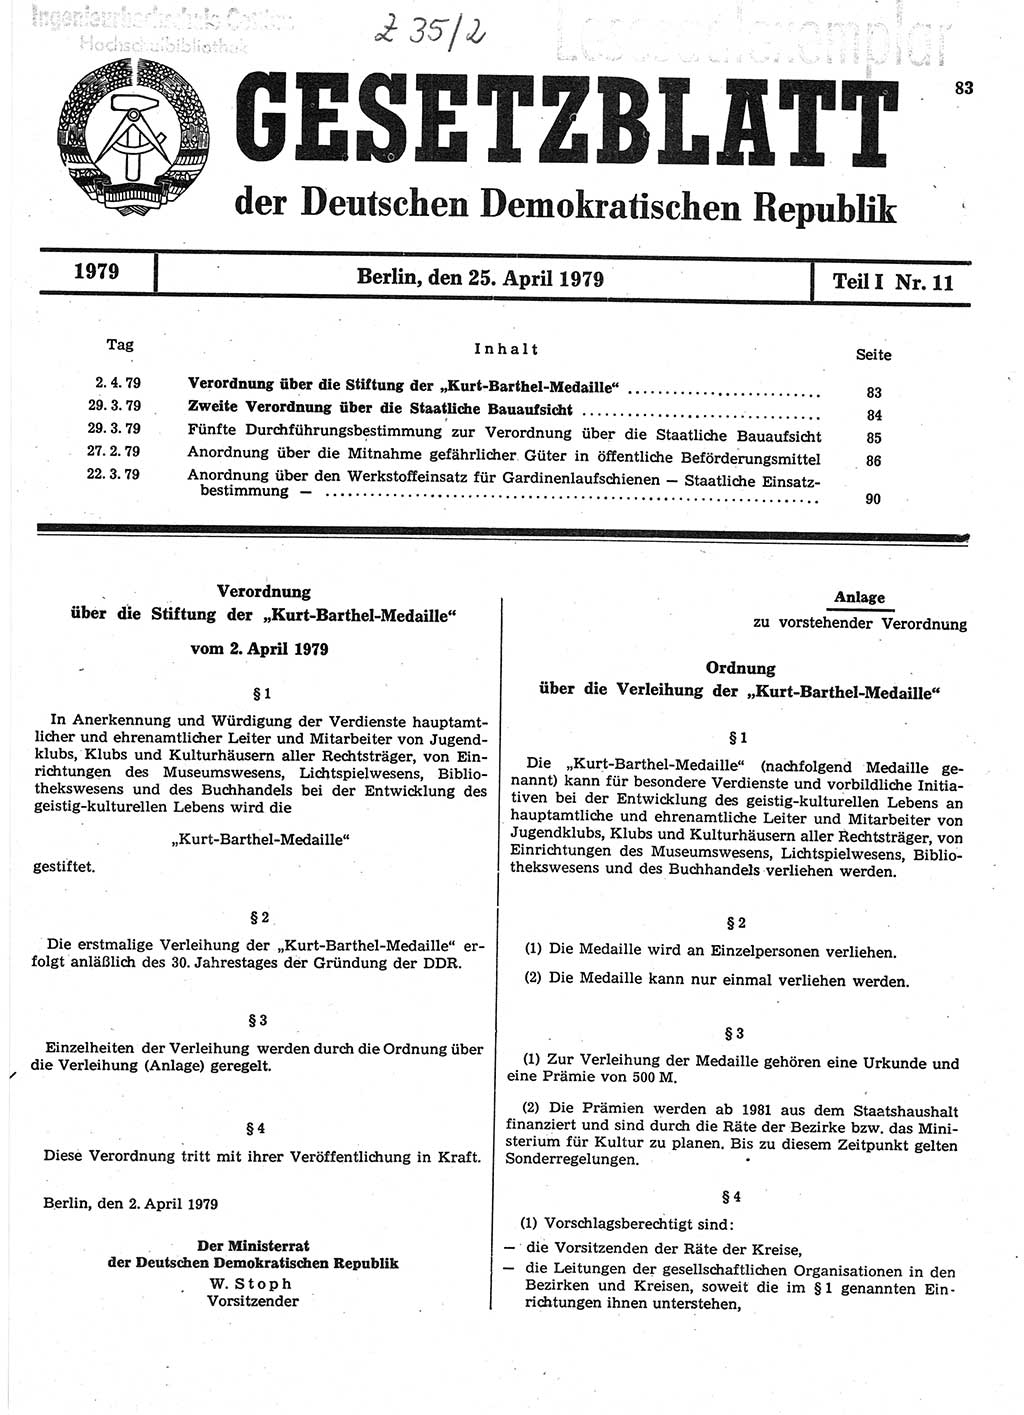 Gesetzblatt (GBl.) der Deutschen Demokratischen Republik (DDR) Teil Ⅰ 1979, Seite 83 (GBl. DDR Ⅰ 1979, S. 83)